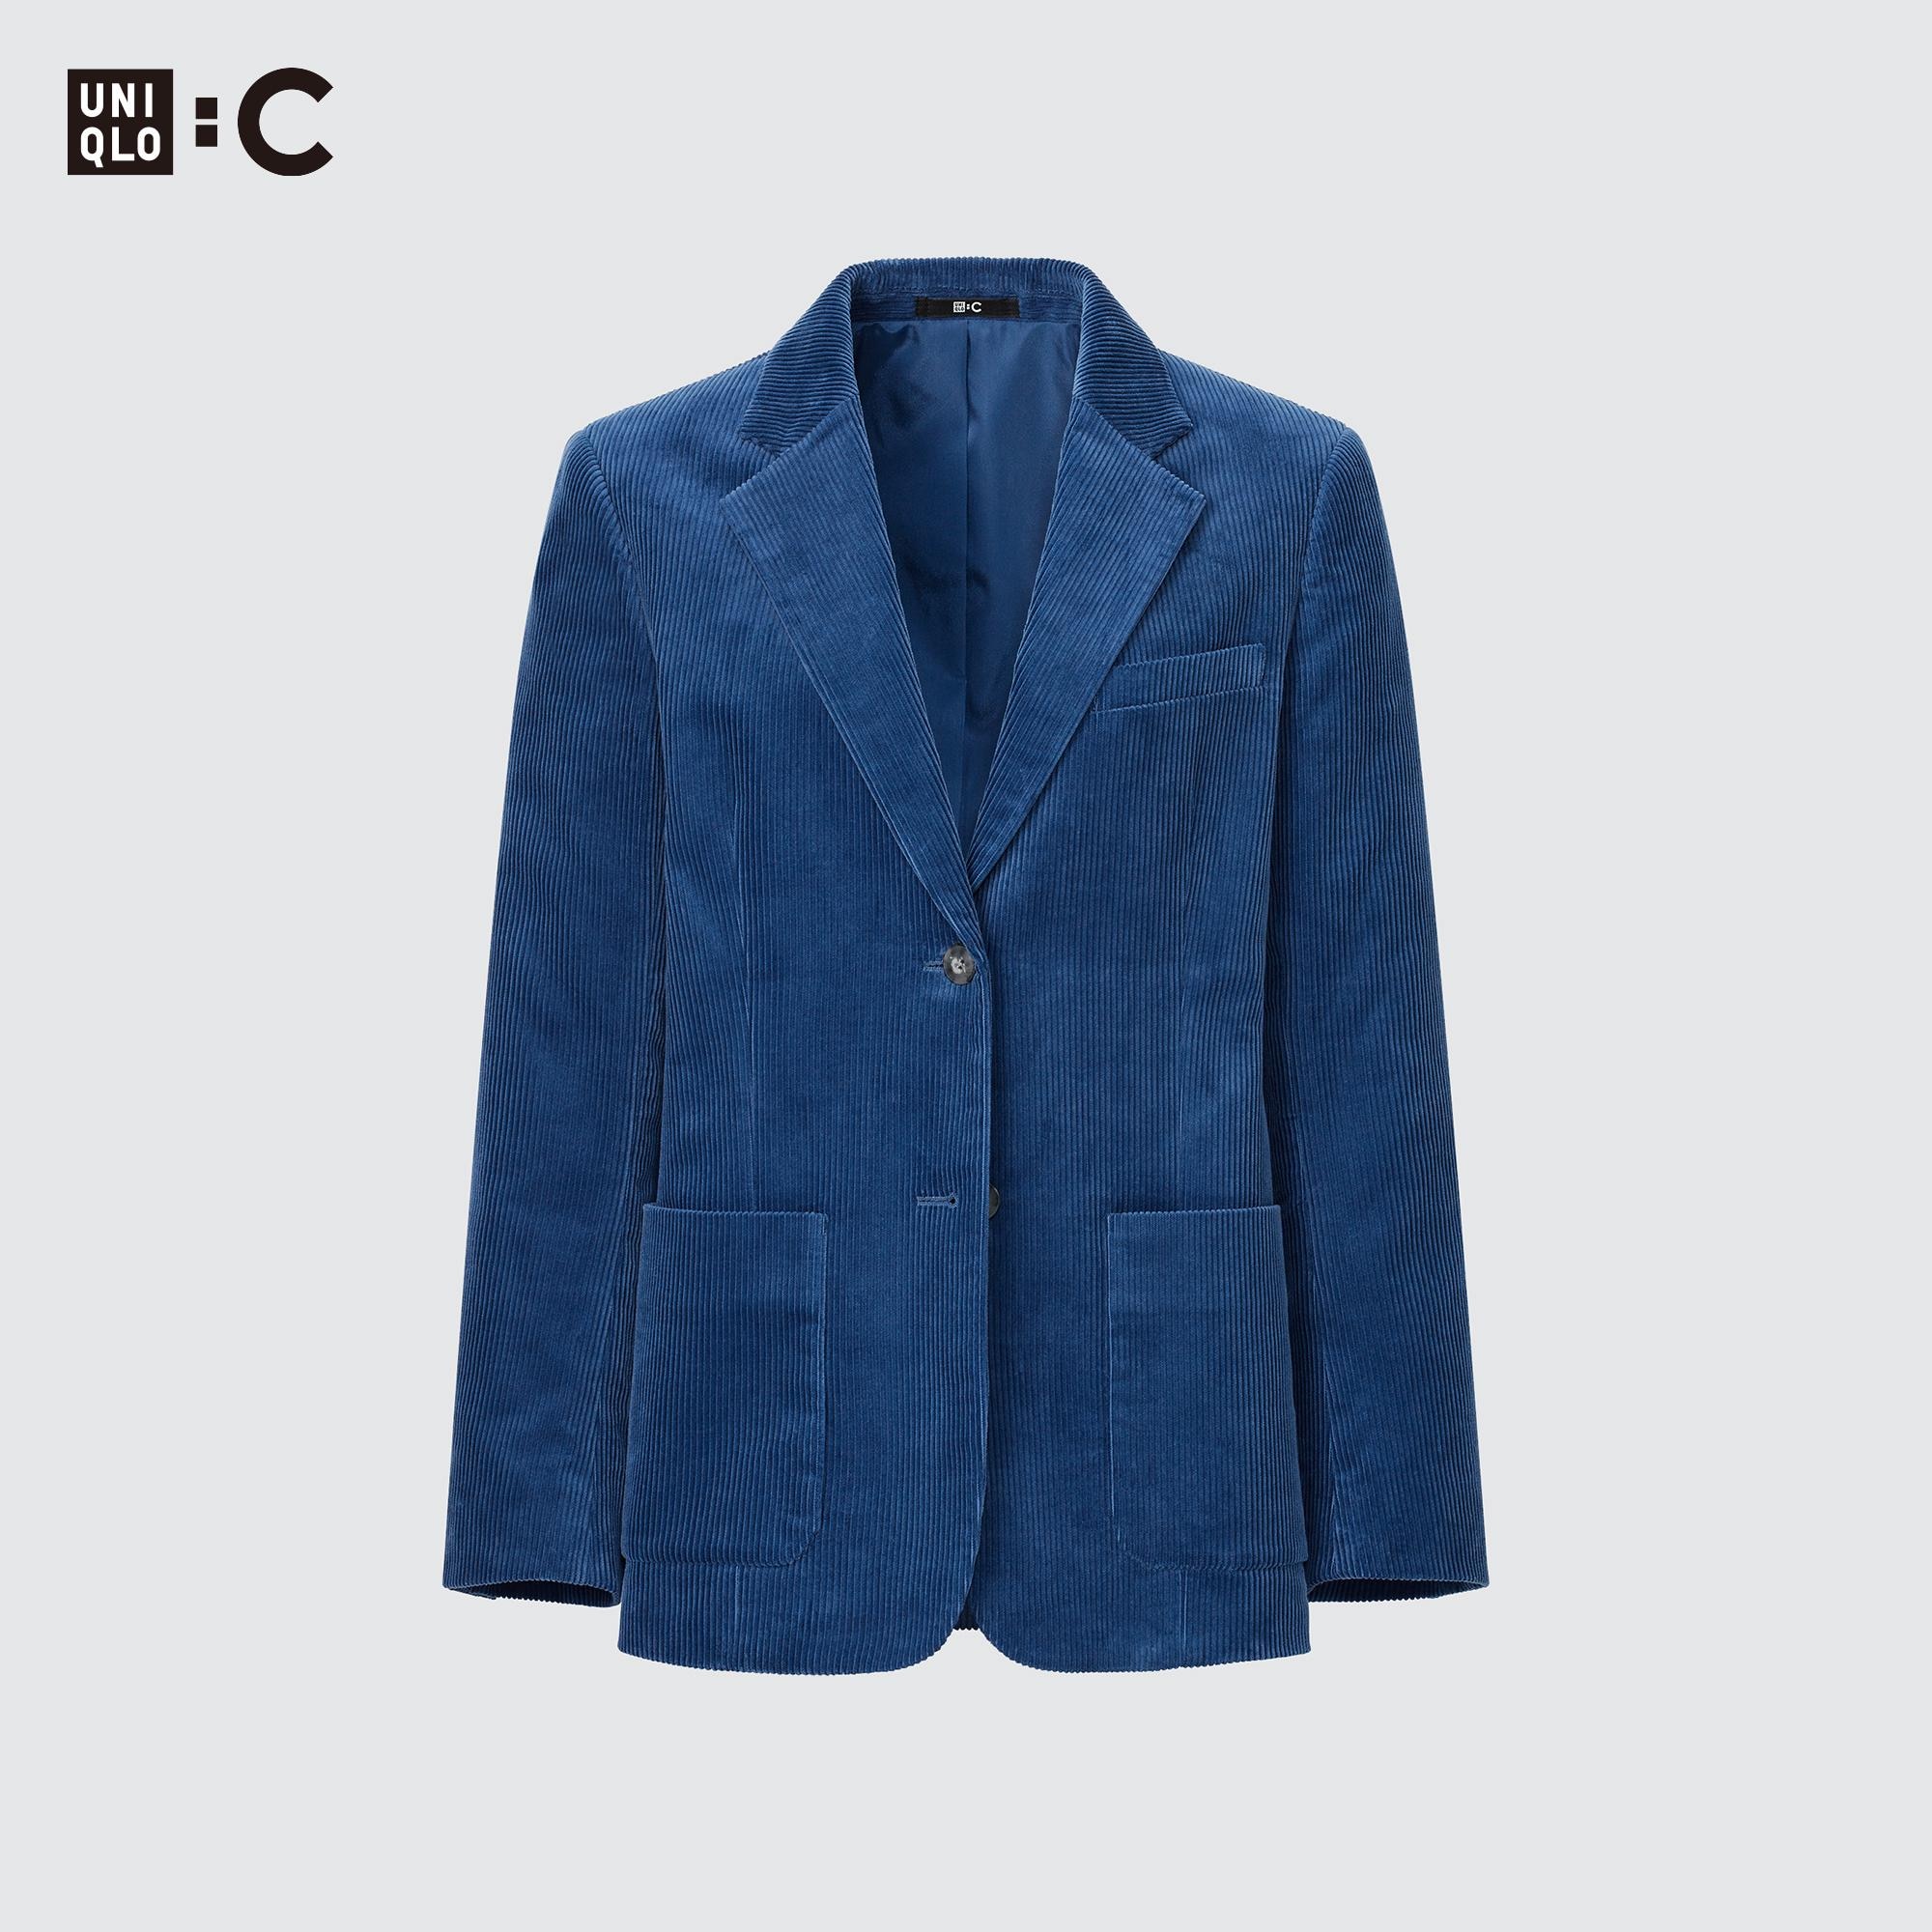 UNIQLO : C コーデュロイジャケット　XL ブルー　新品